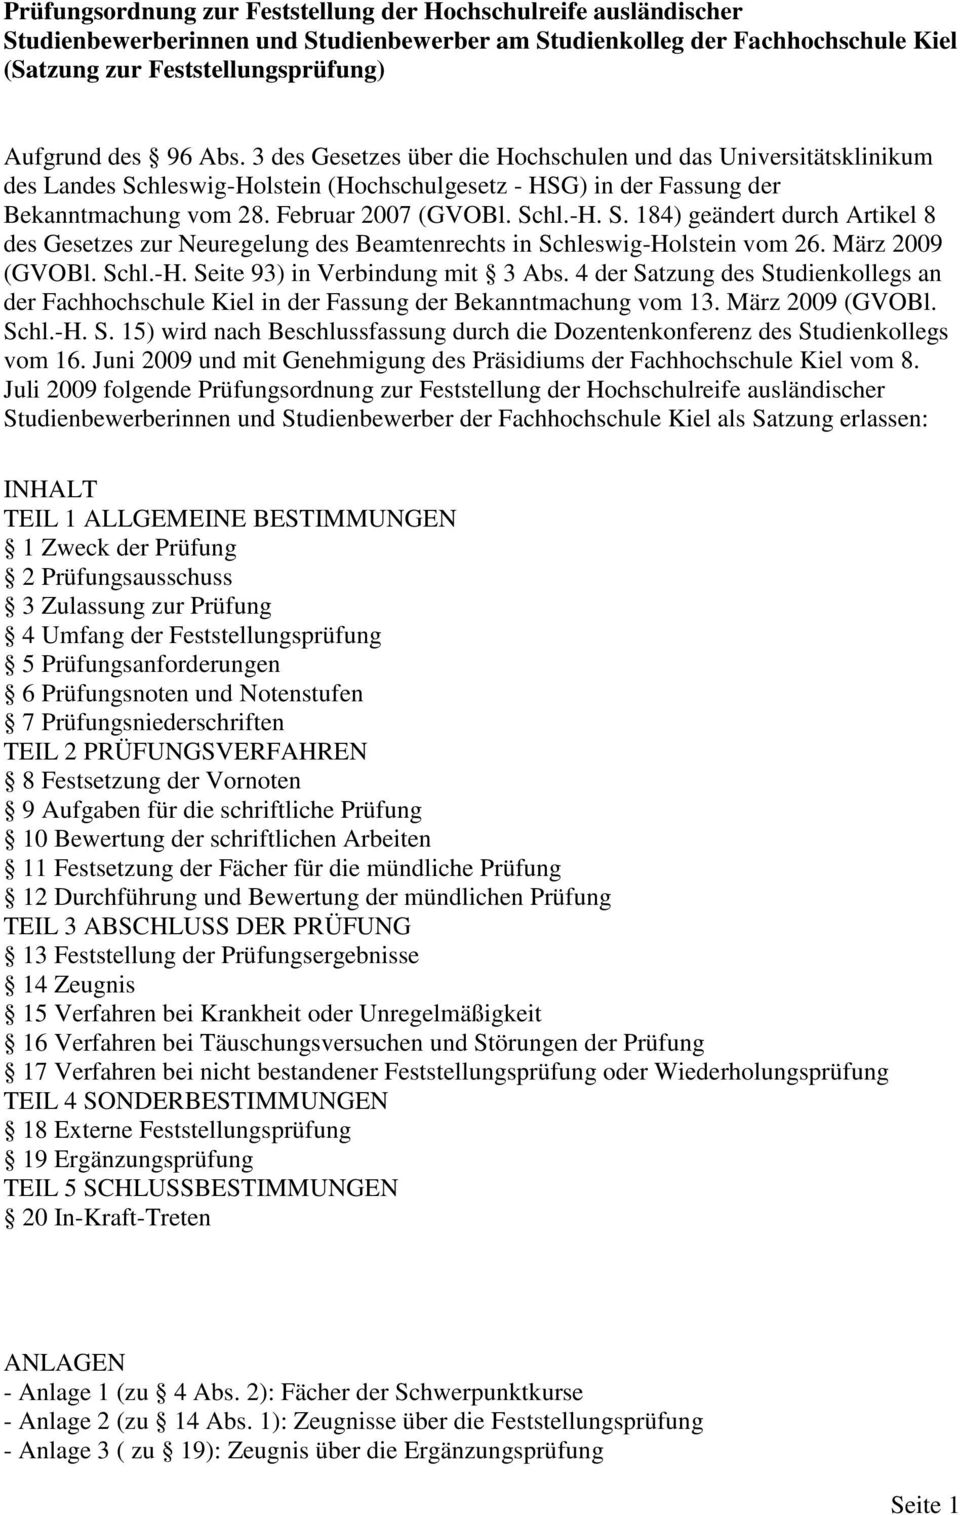 März 2009 (GVOBl. Schl.-H. Seite 93) in Verbindung mit 3 Abs. 4 der Satzung des Studienkollegs an der Fachhochschule Kiel in der Fassung der Bekanntmachung vom 13. März 2009 (GVOBl. Schl.-H. S. 15) wird nach Beschlussfassung durch die Dozentenkonferenz des Studienkollegs vom 16.